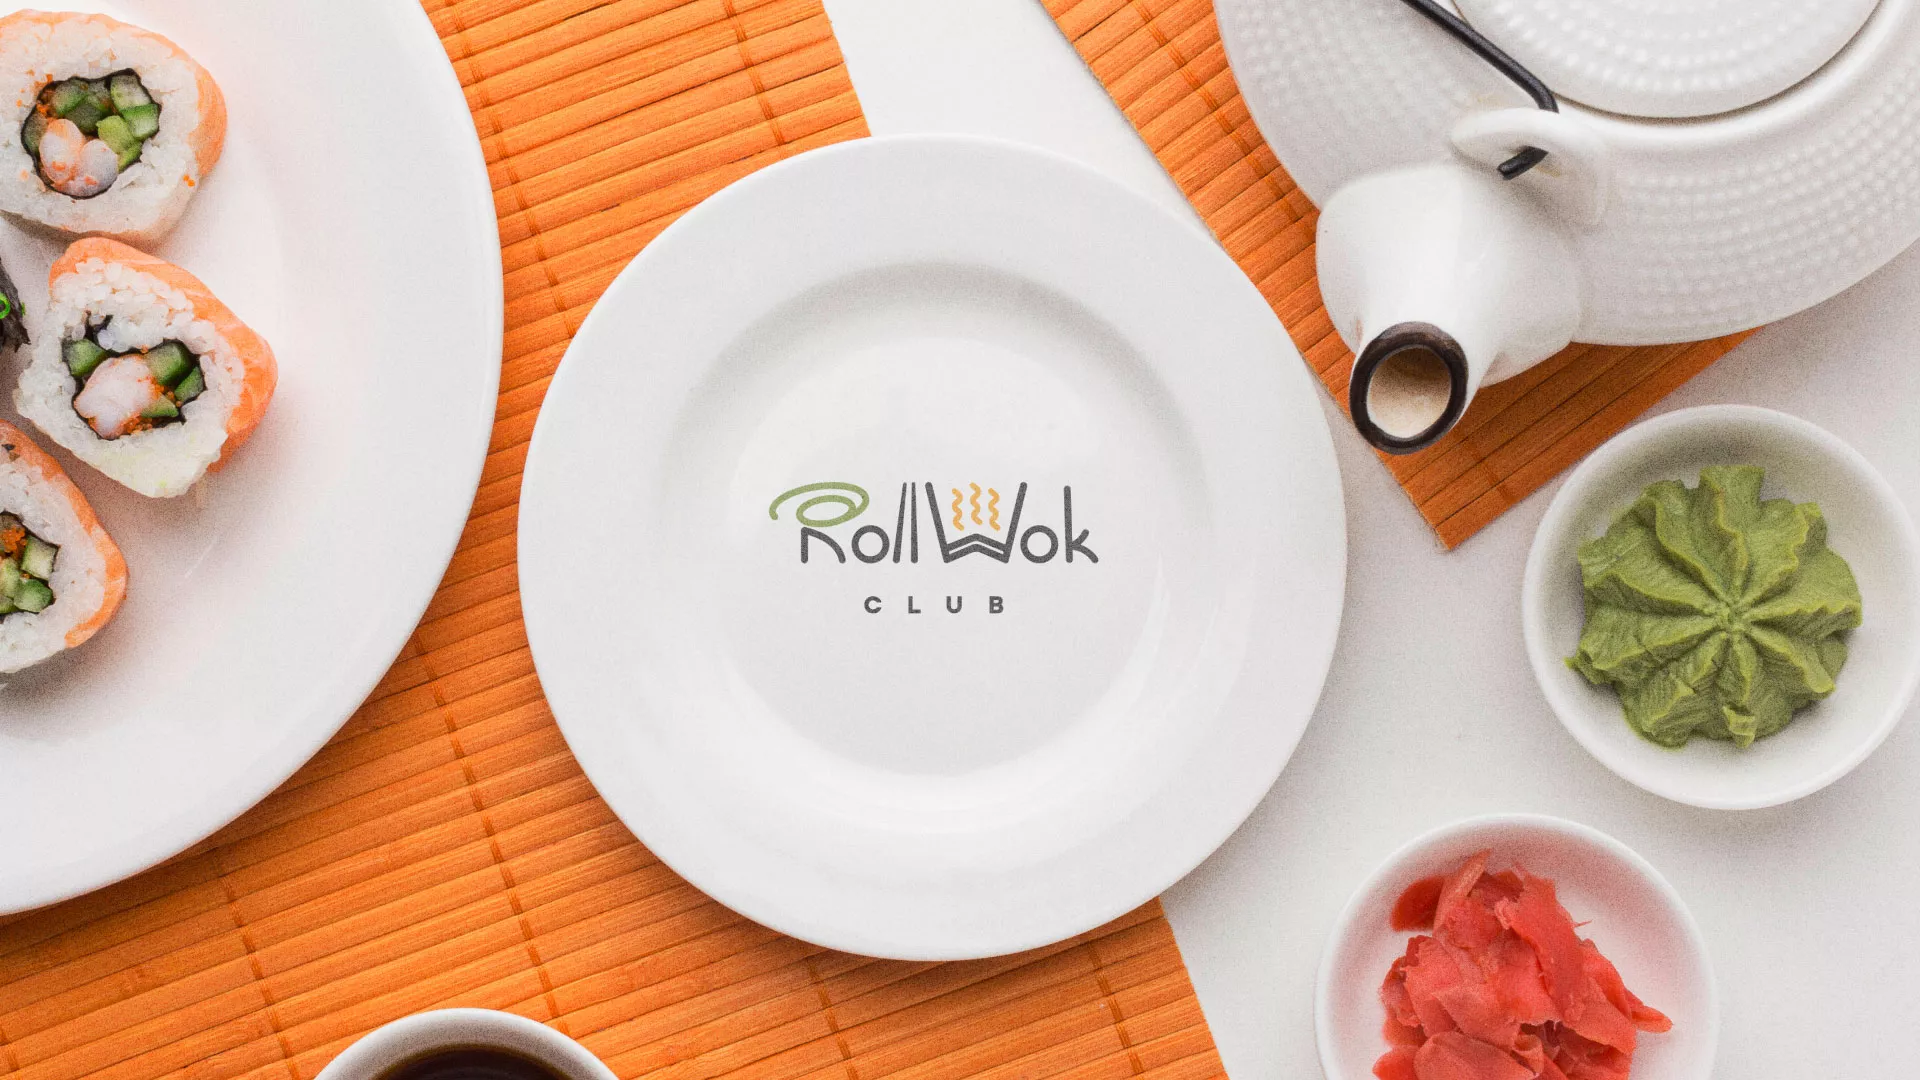 Разработка логотипа и фирменного стиля суши-бара «Roll Wok Club» в Духовщине